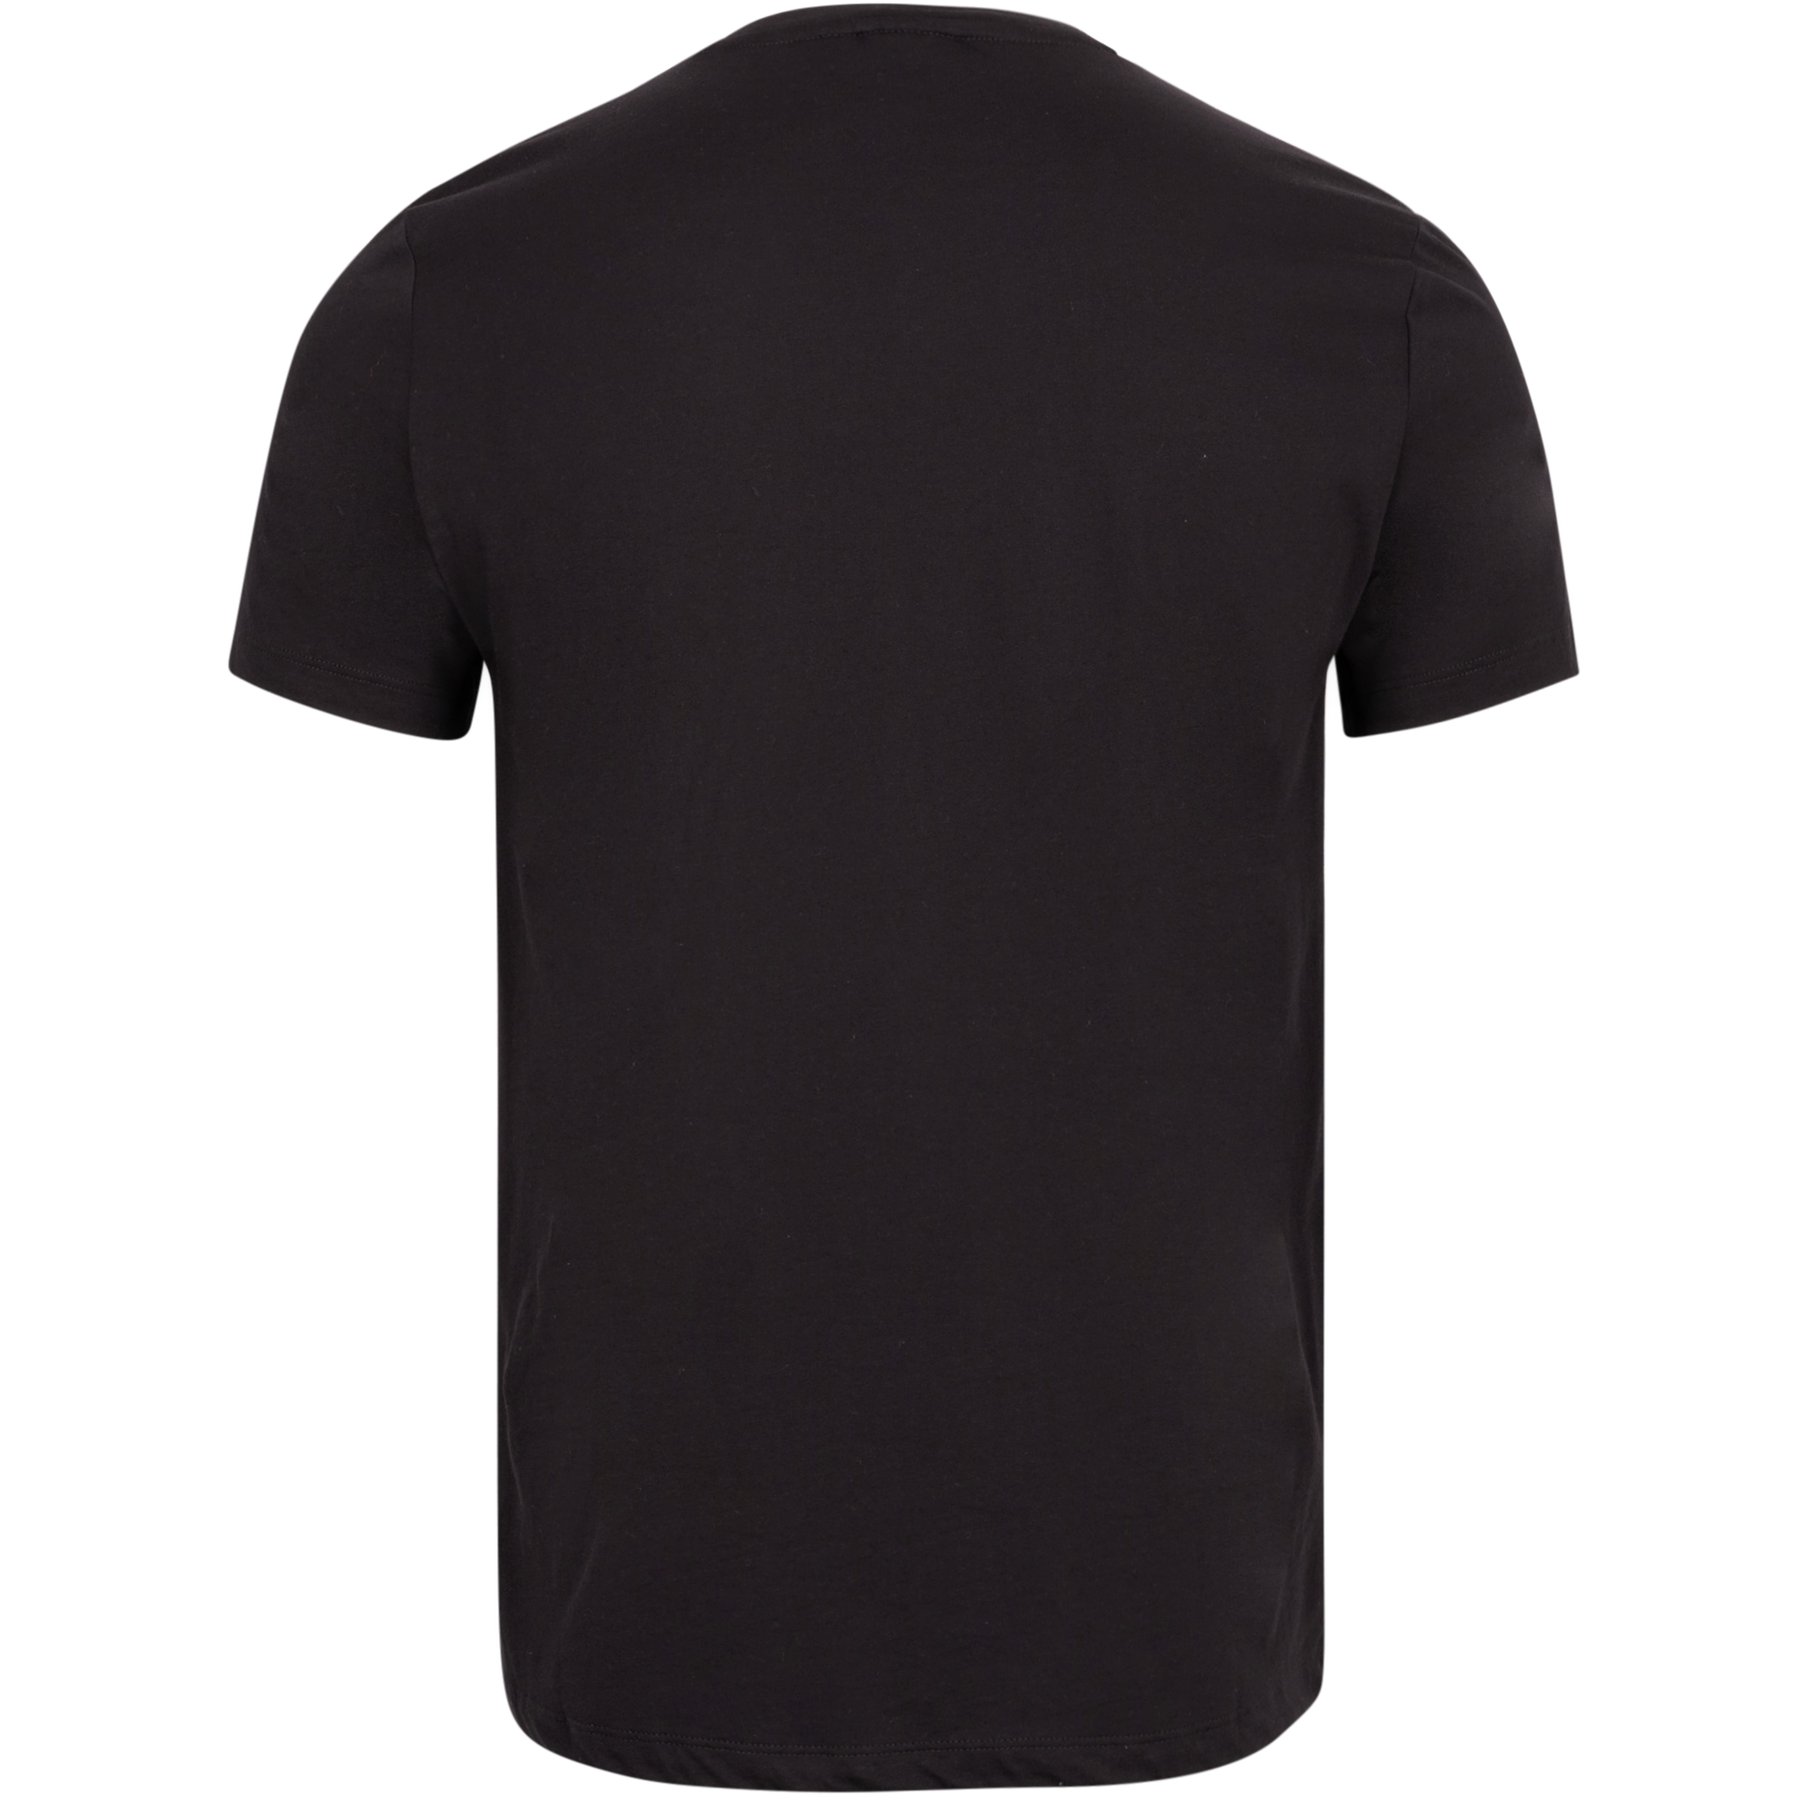 Centre T-Shirt - Black Beauty